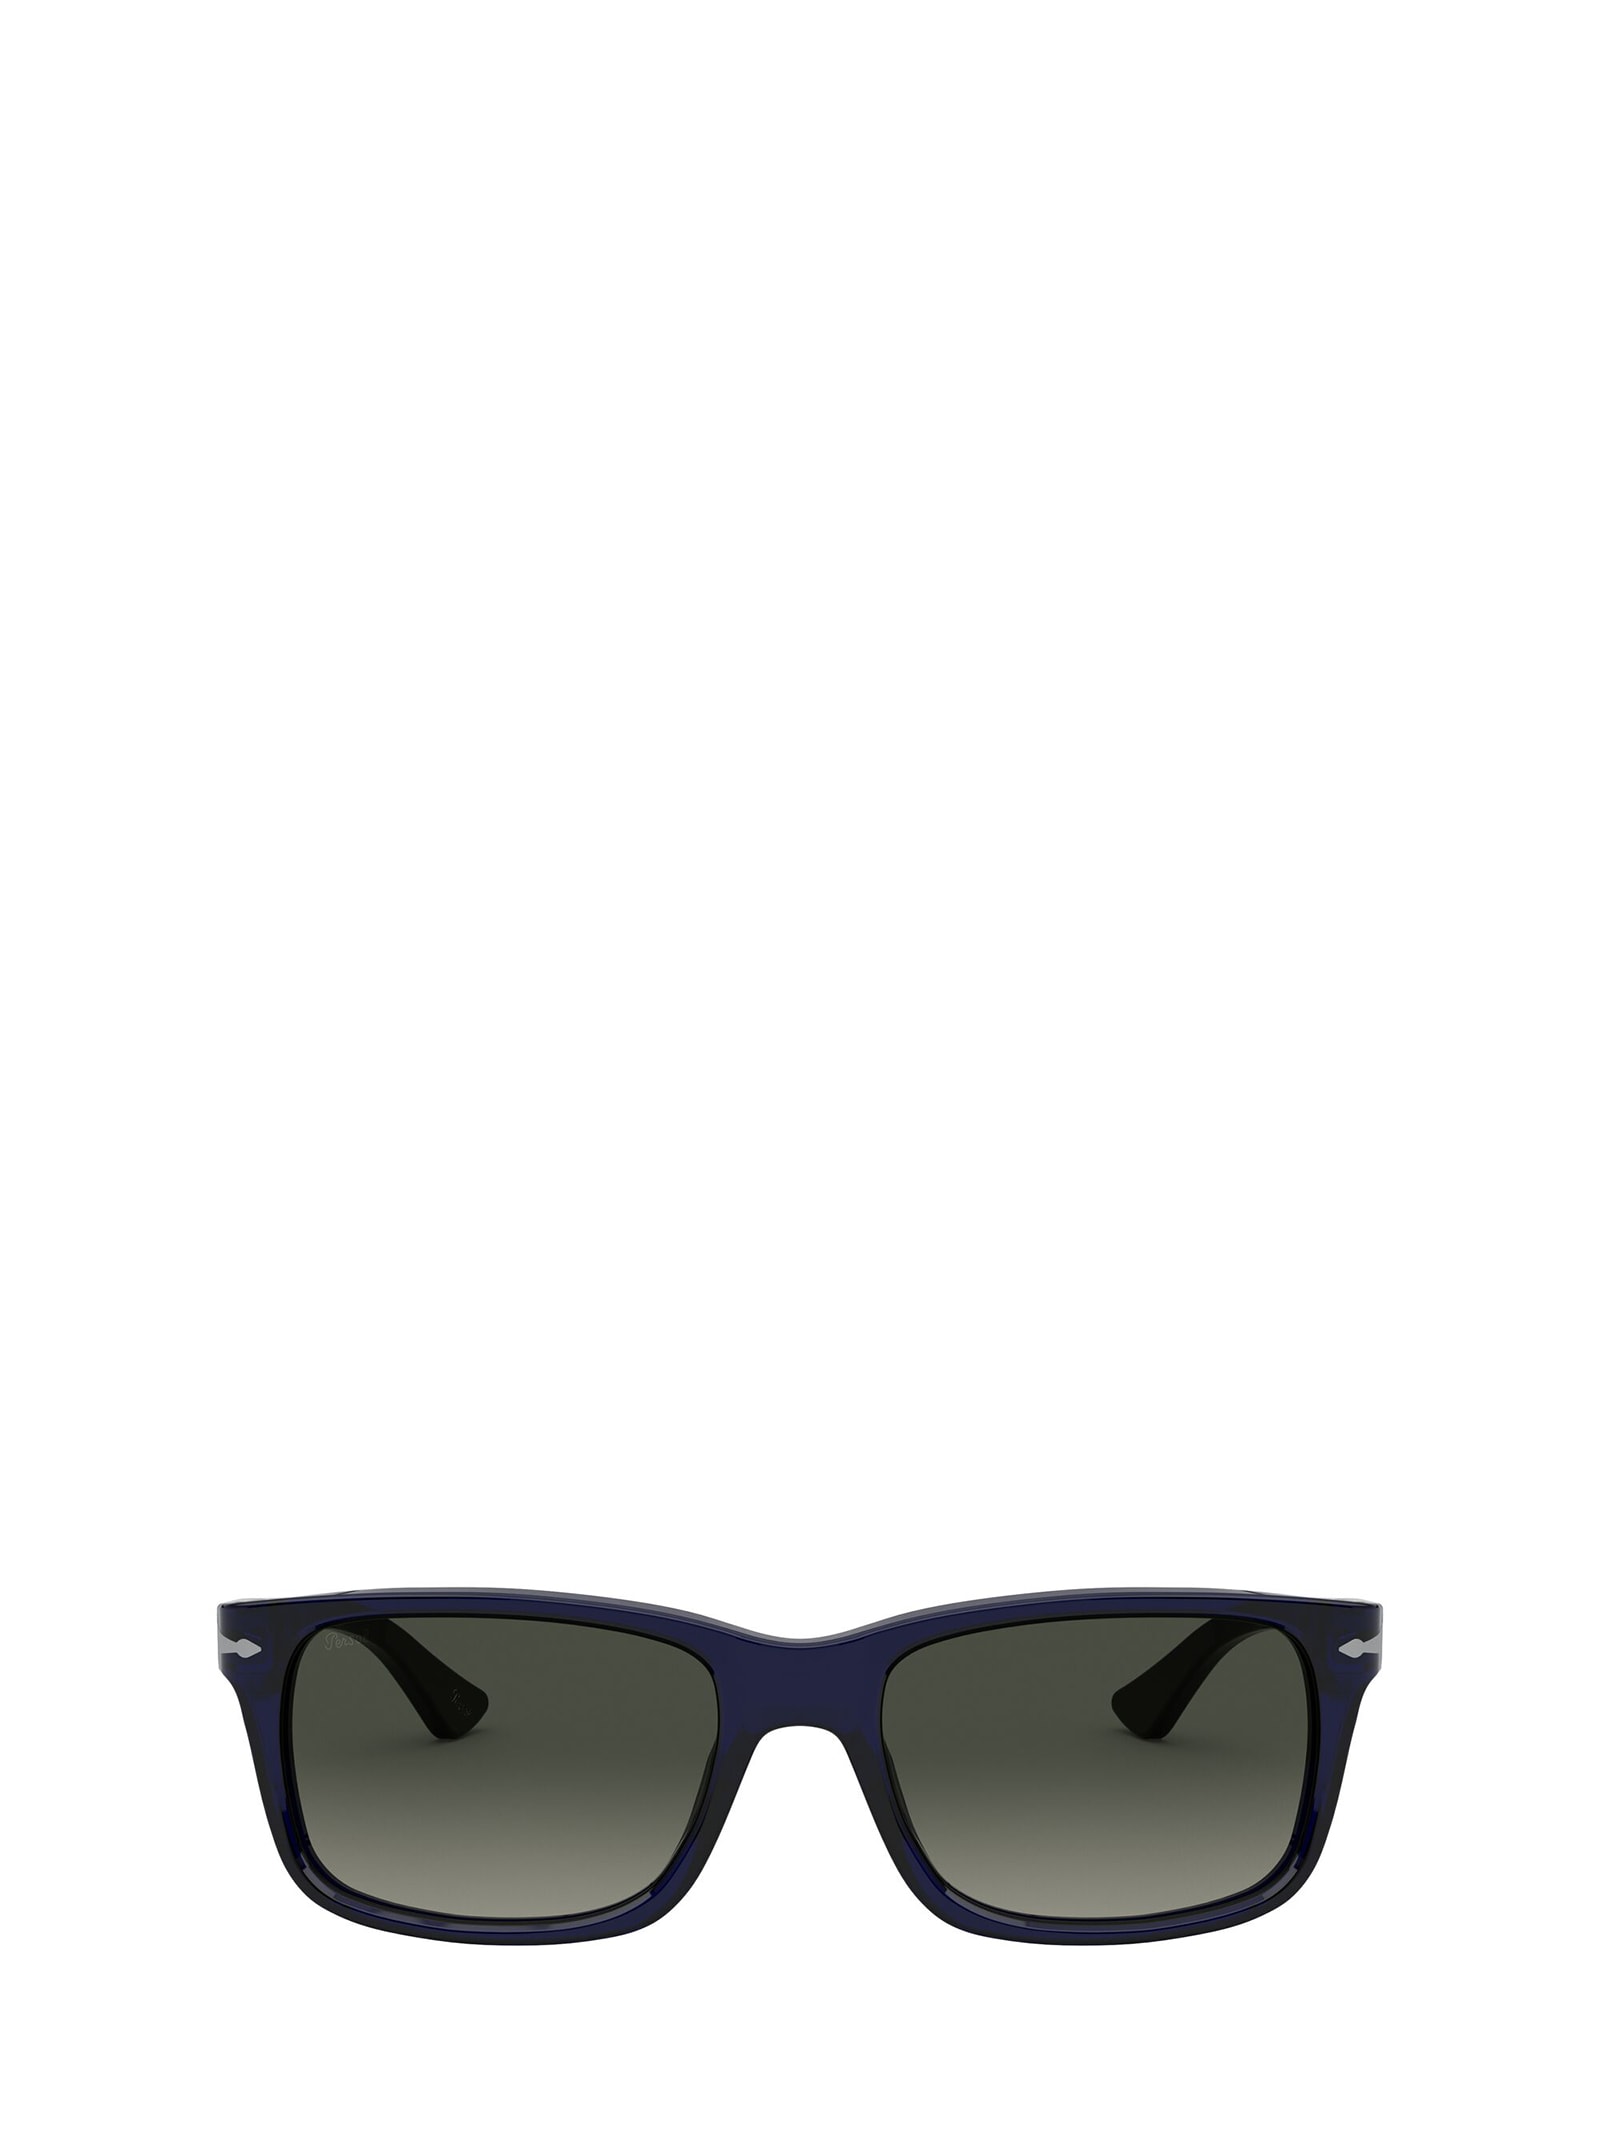 Persol Persol Po3048s Cobalto Sunglasses